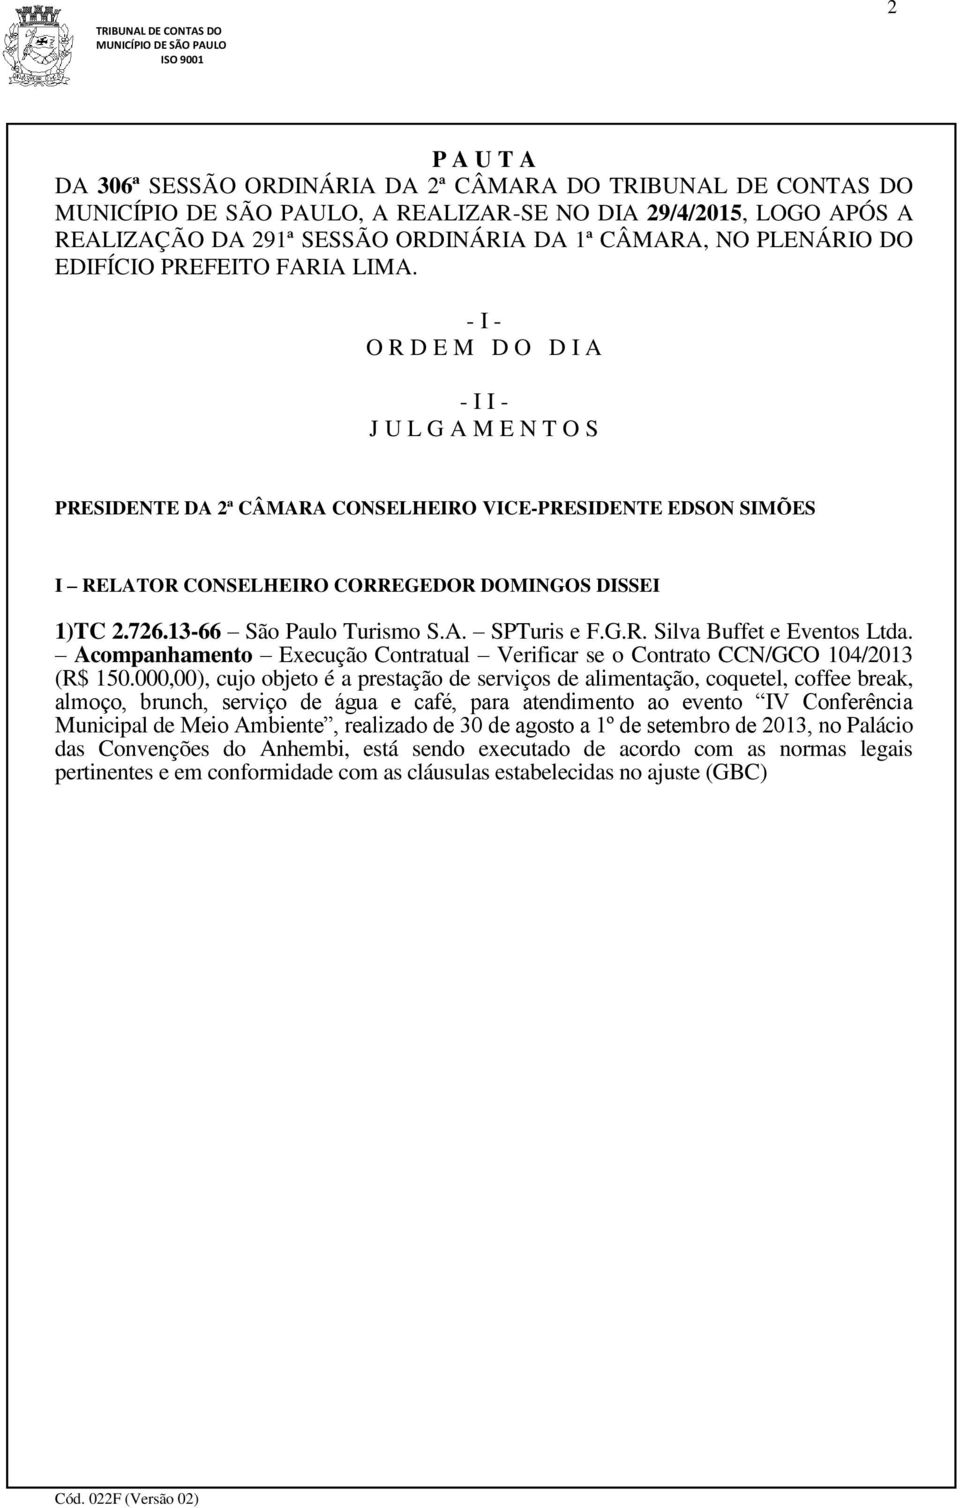 726.13-66 São Paulo Turismo S.A. SPTuris e F.G.R. Silva Buffet e Eventos Ltda. Acompanhamento Execução Contratual Verificar se o Contrato CCN/GCO 104/2013 (R$ 150.